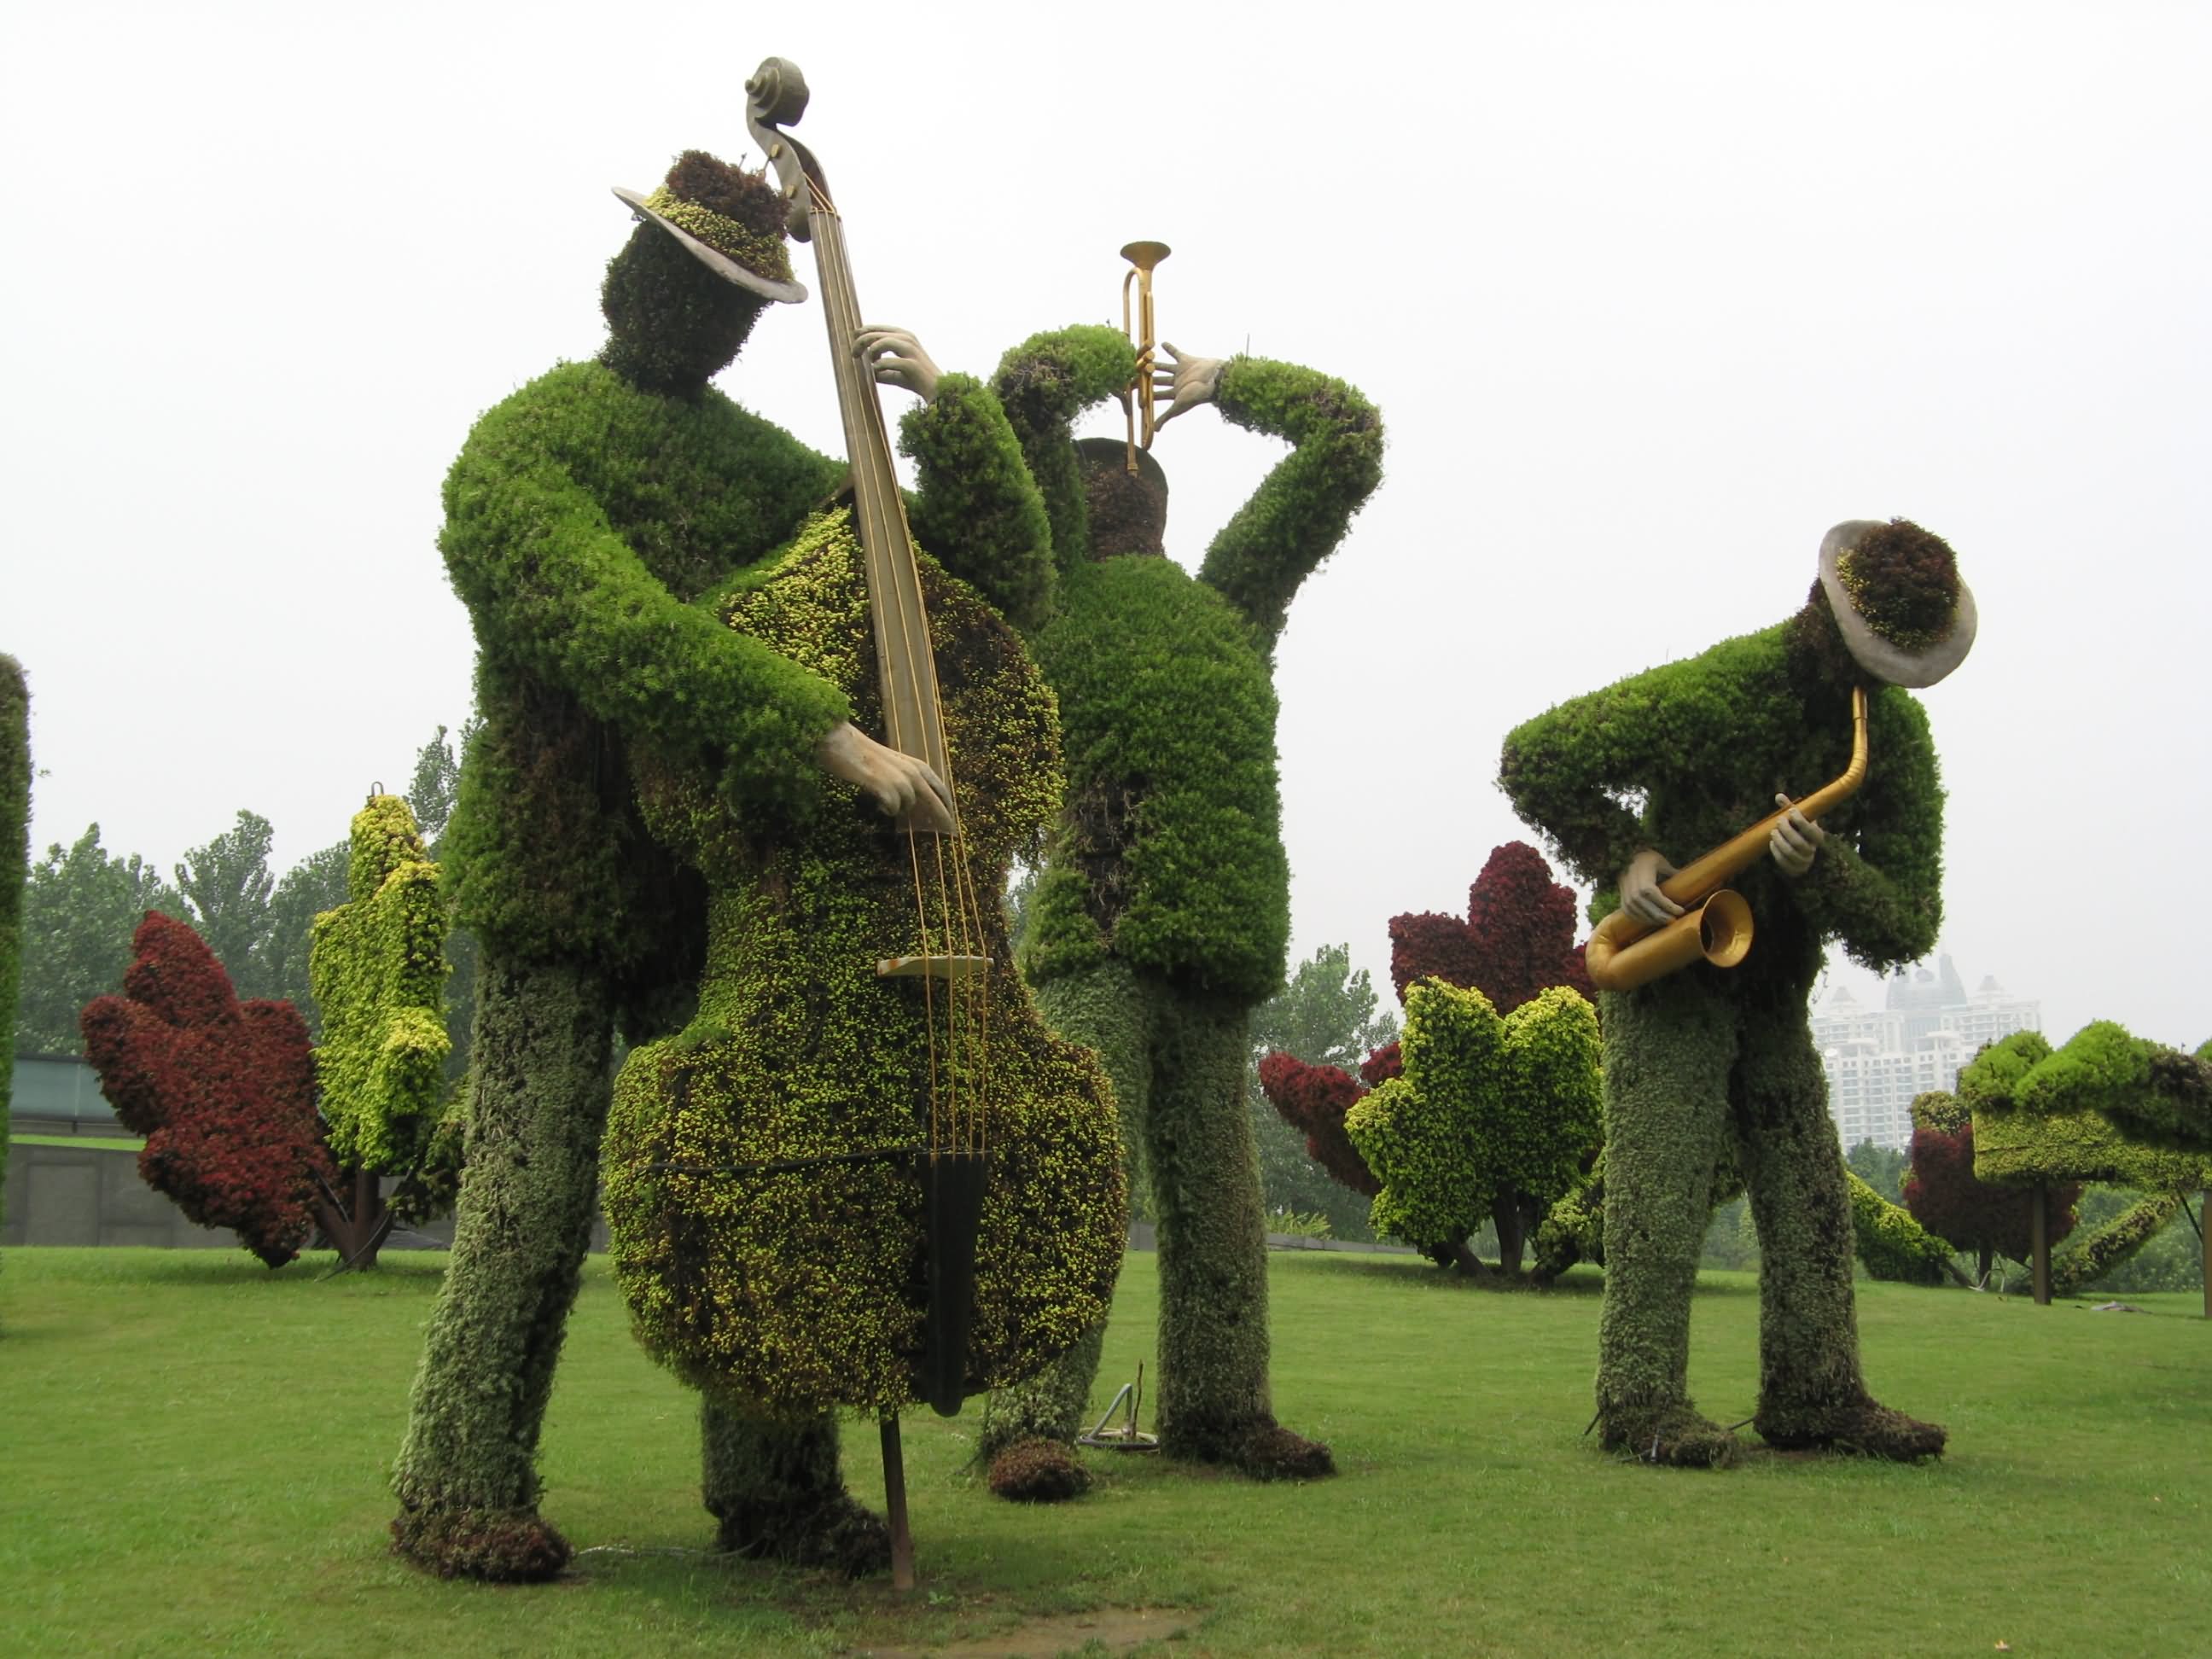 Funny Green Garden Musicians Image